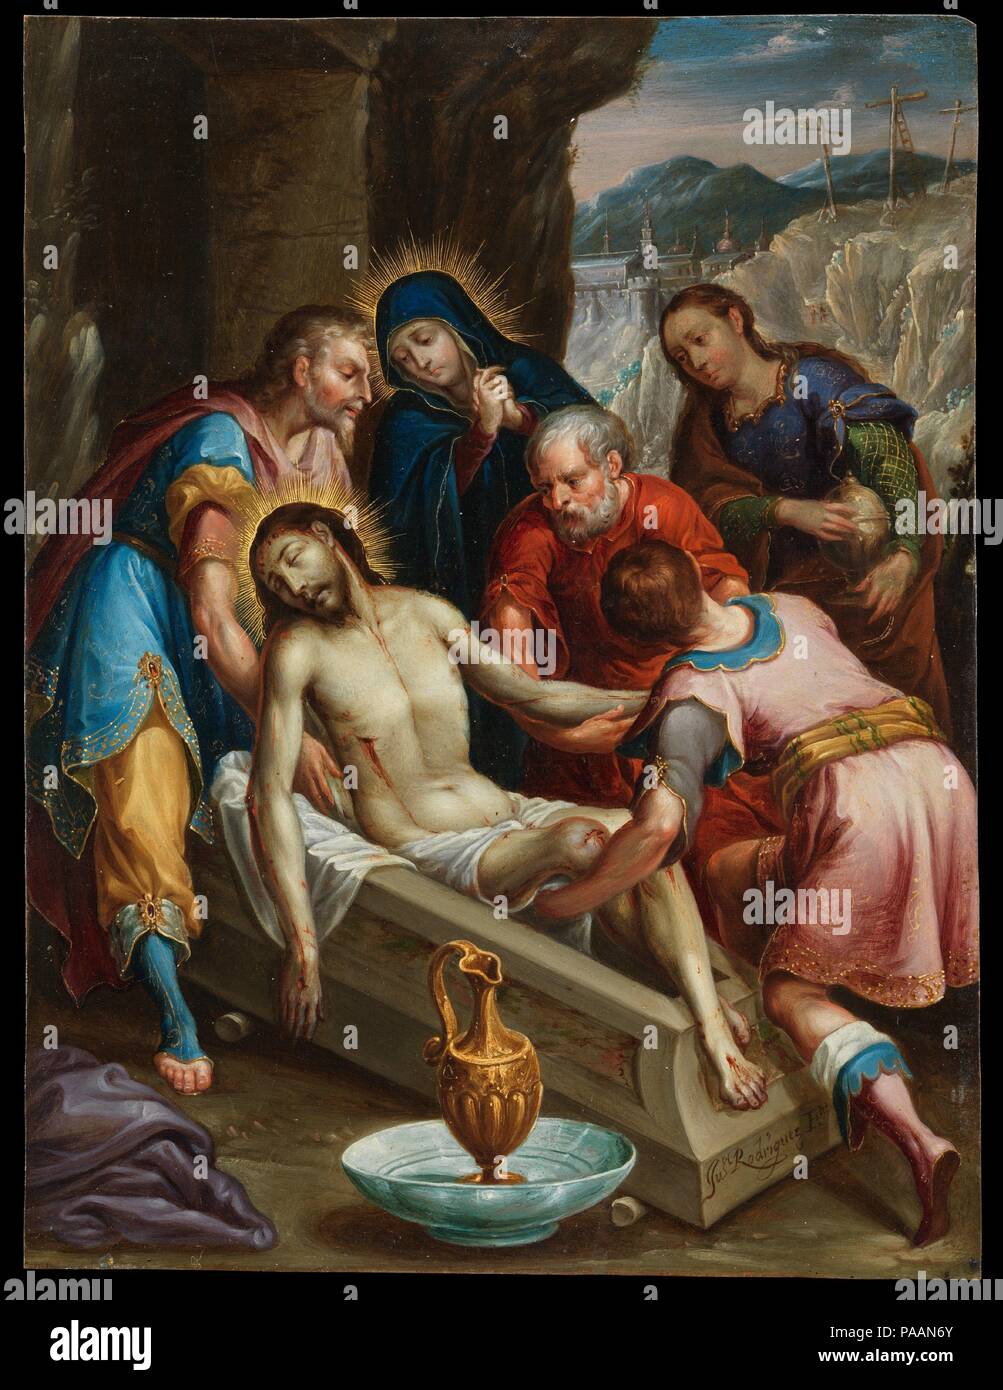 La sepultura de Cristo. Artista: Juan Rodríguez Juárez (México, 1675-1728).  Dimensiones: 10 3/16 x 7 3/4 in. (25,9 × 19,7 cm) Enmarcado: 17 3/4 x 15  3/4 x 1 1/2 in. (45,1 ×